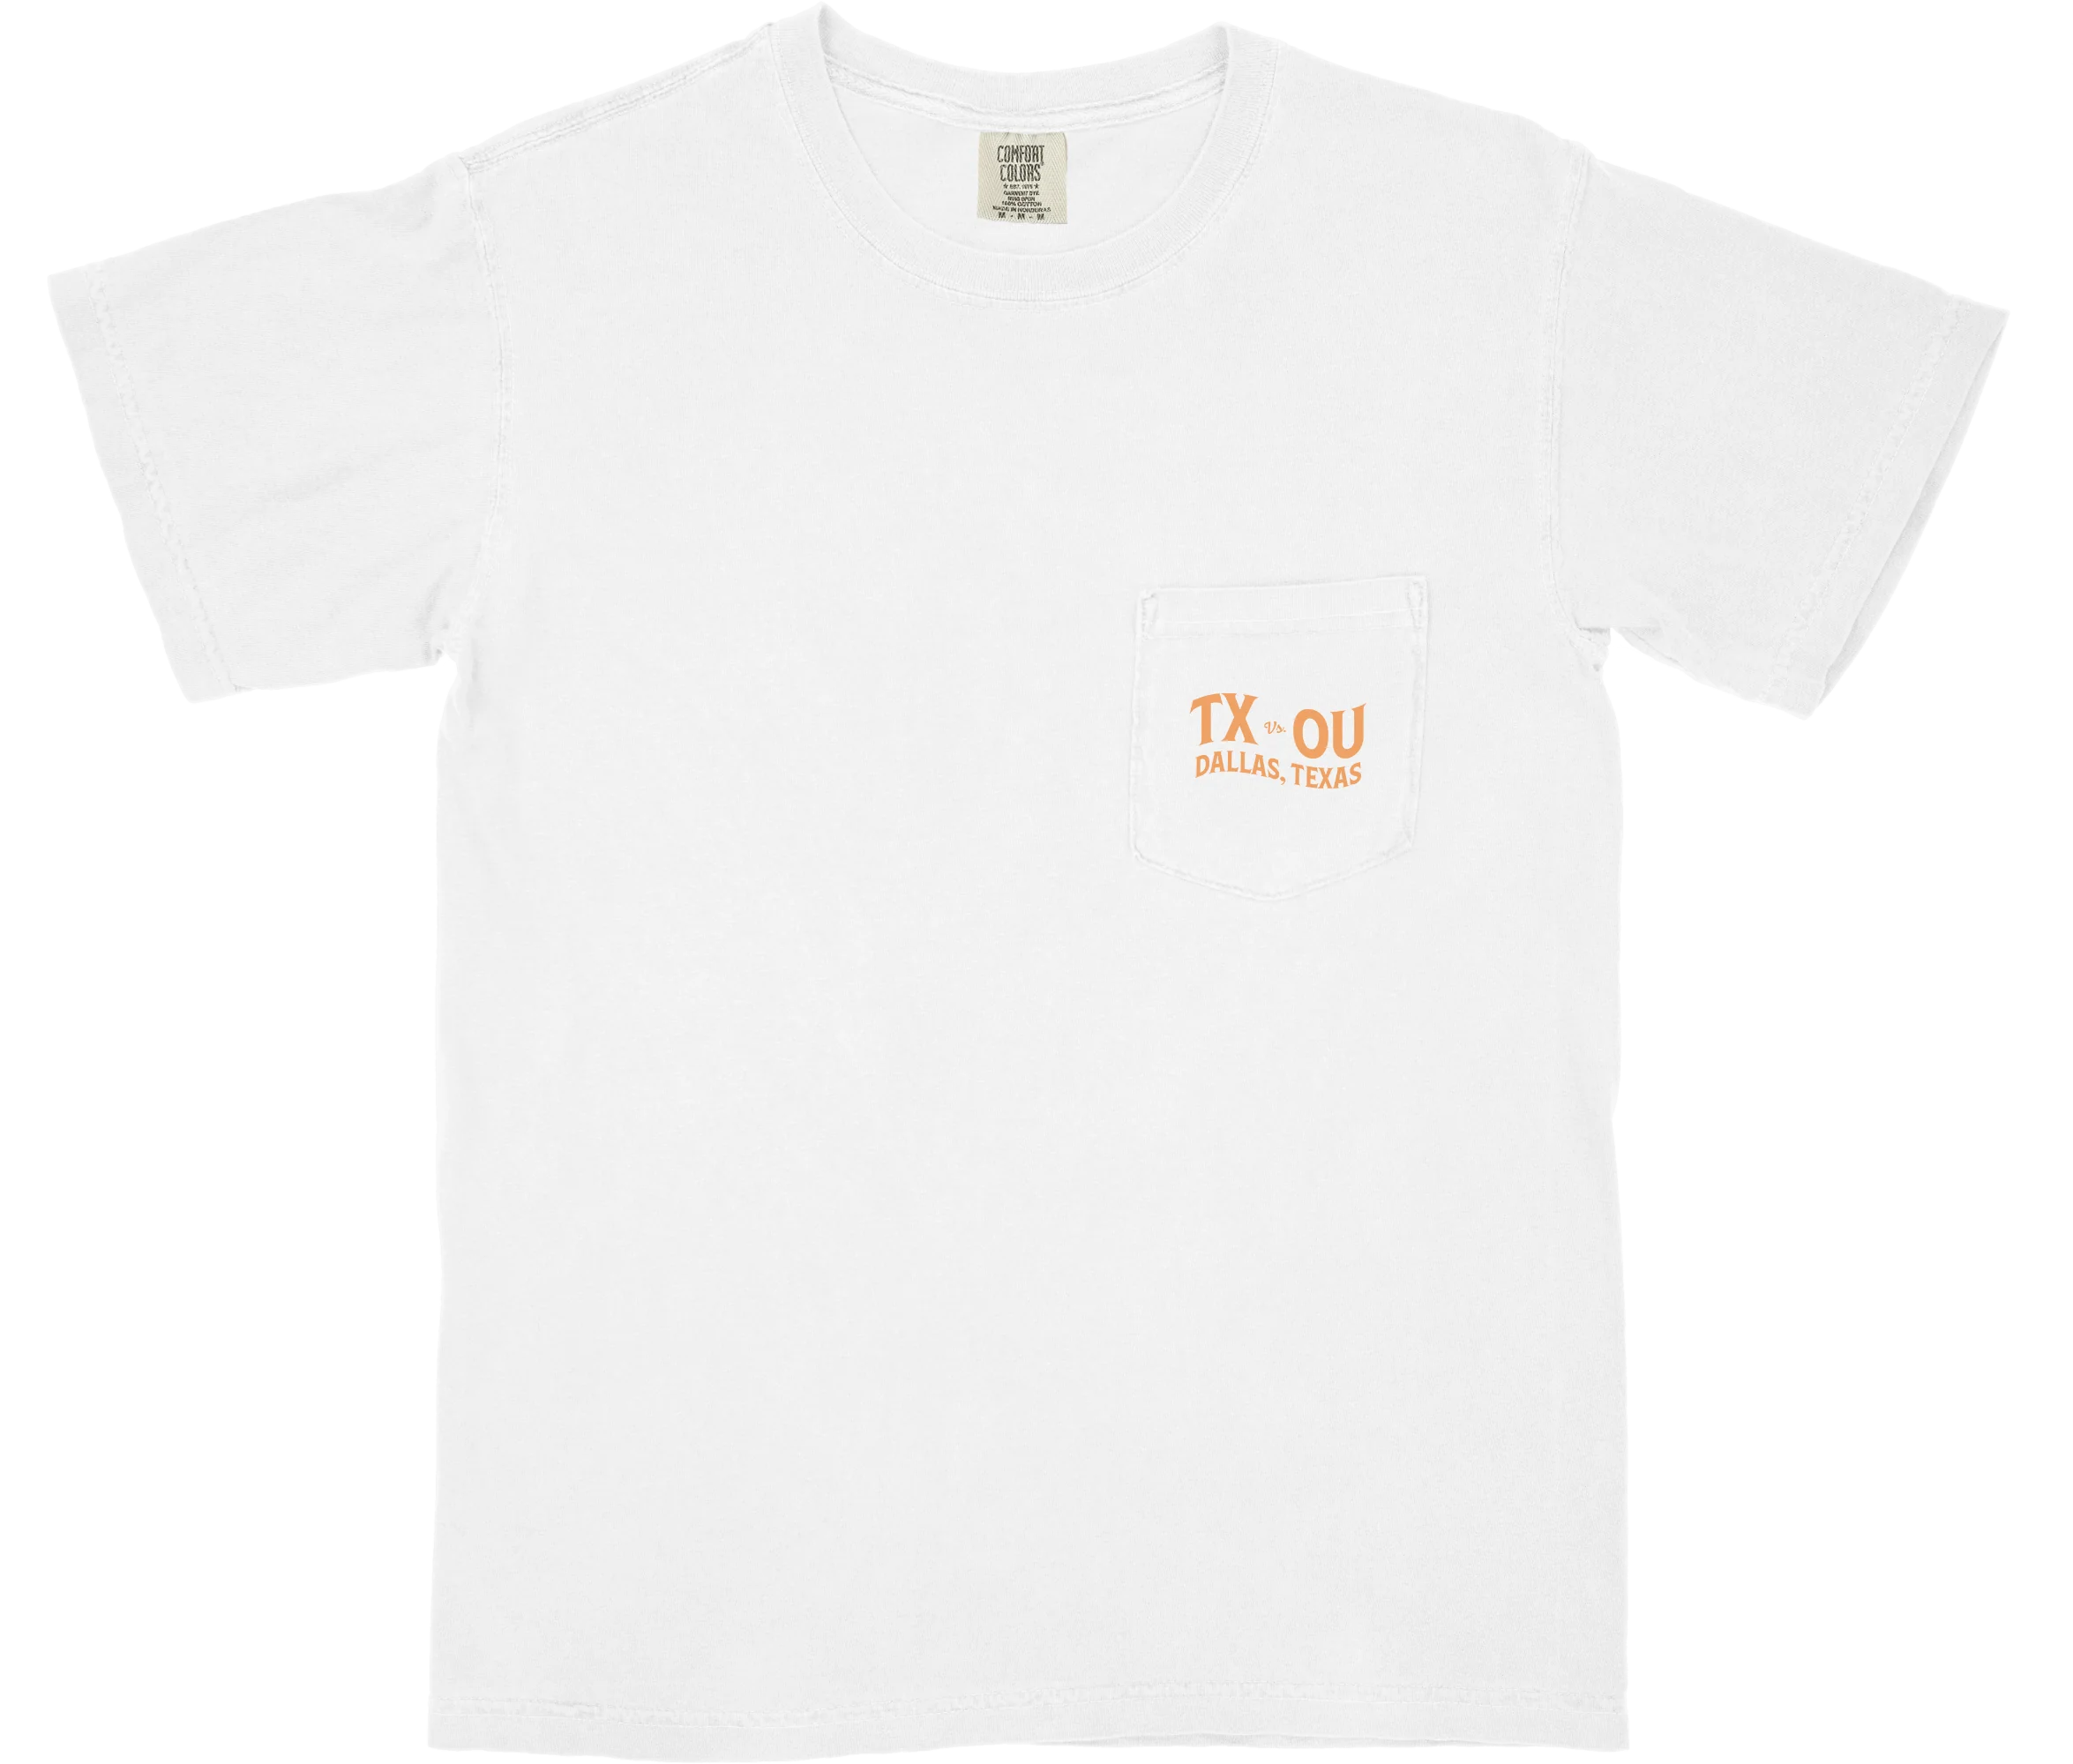 Sigma Chi TX-OU Shirt